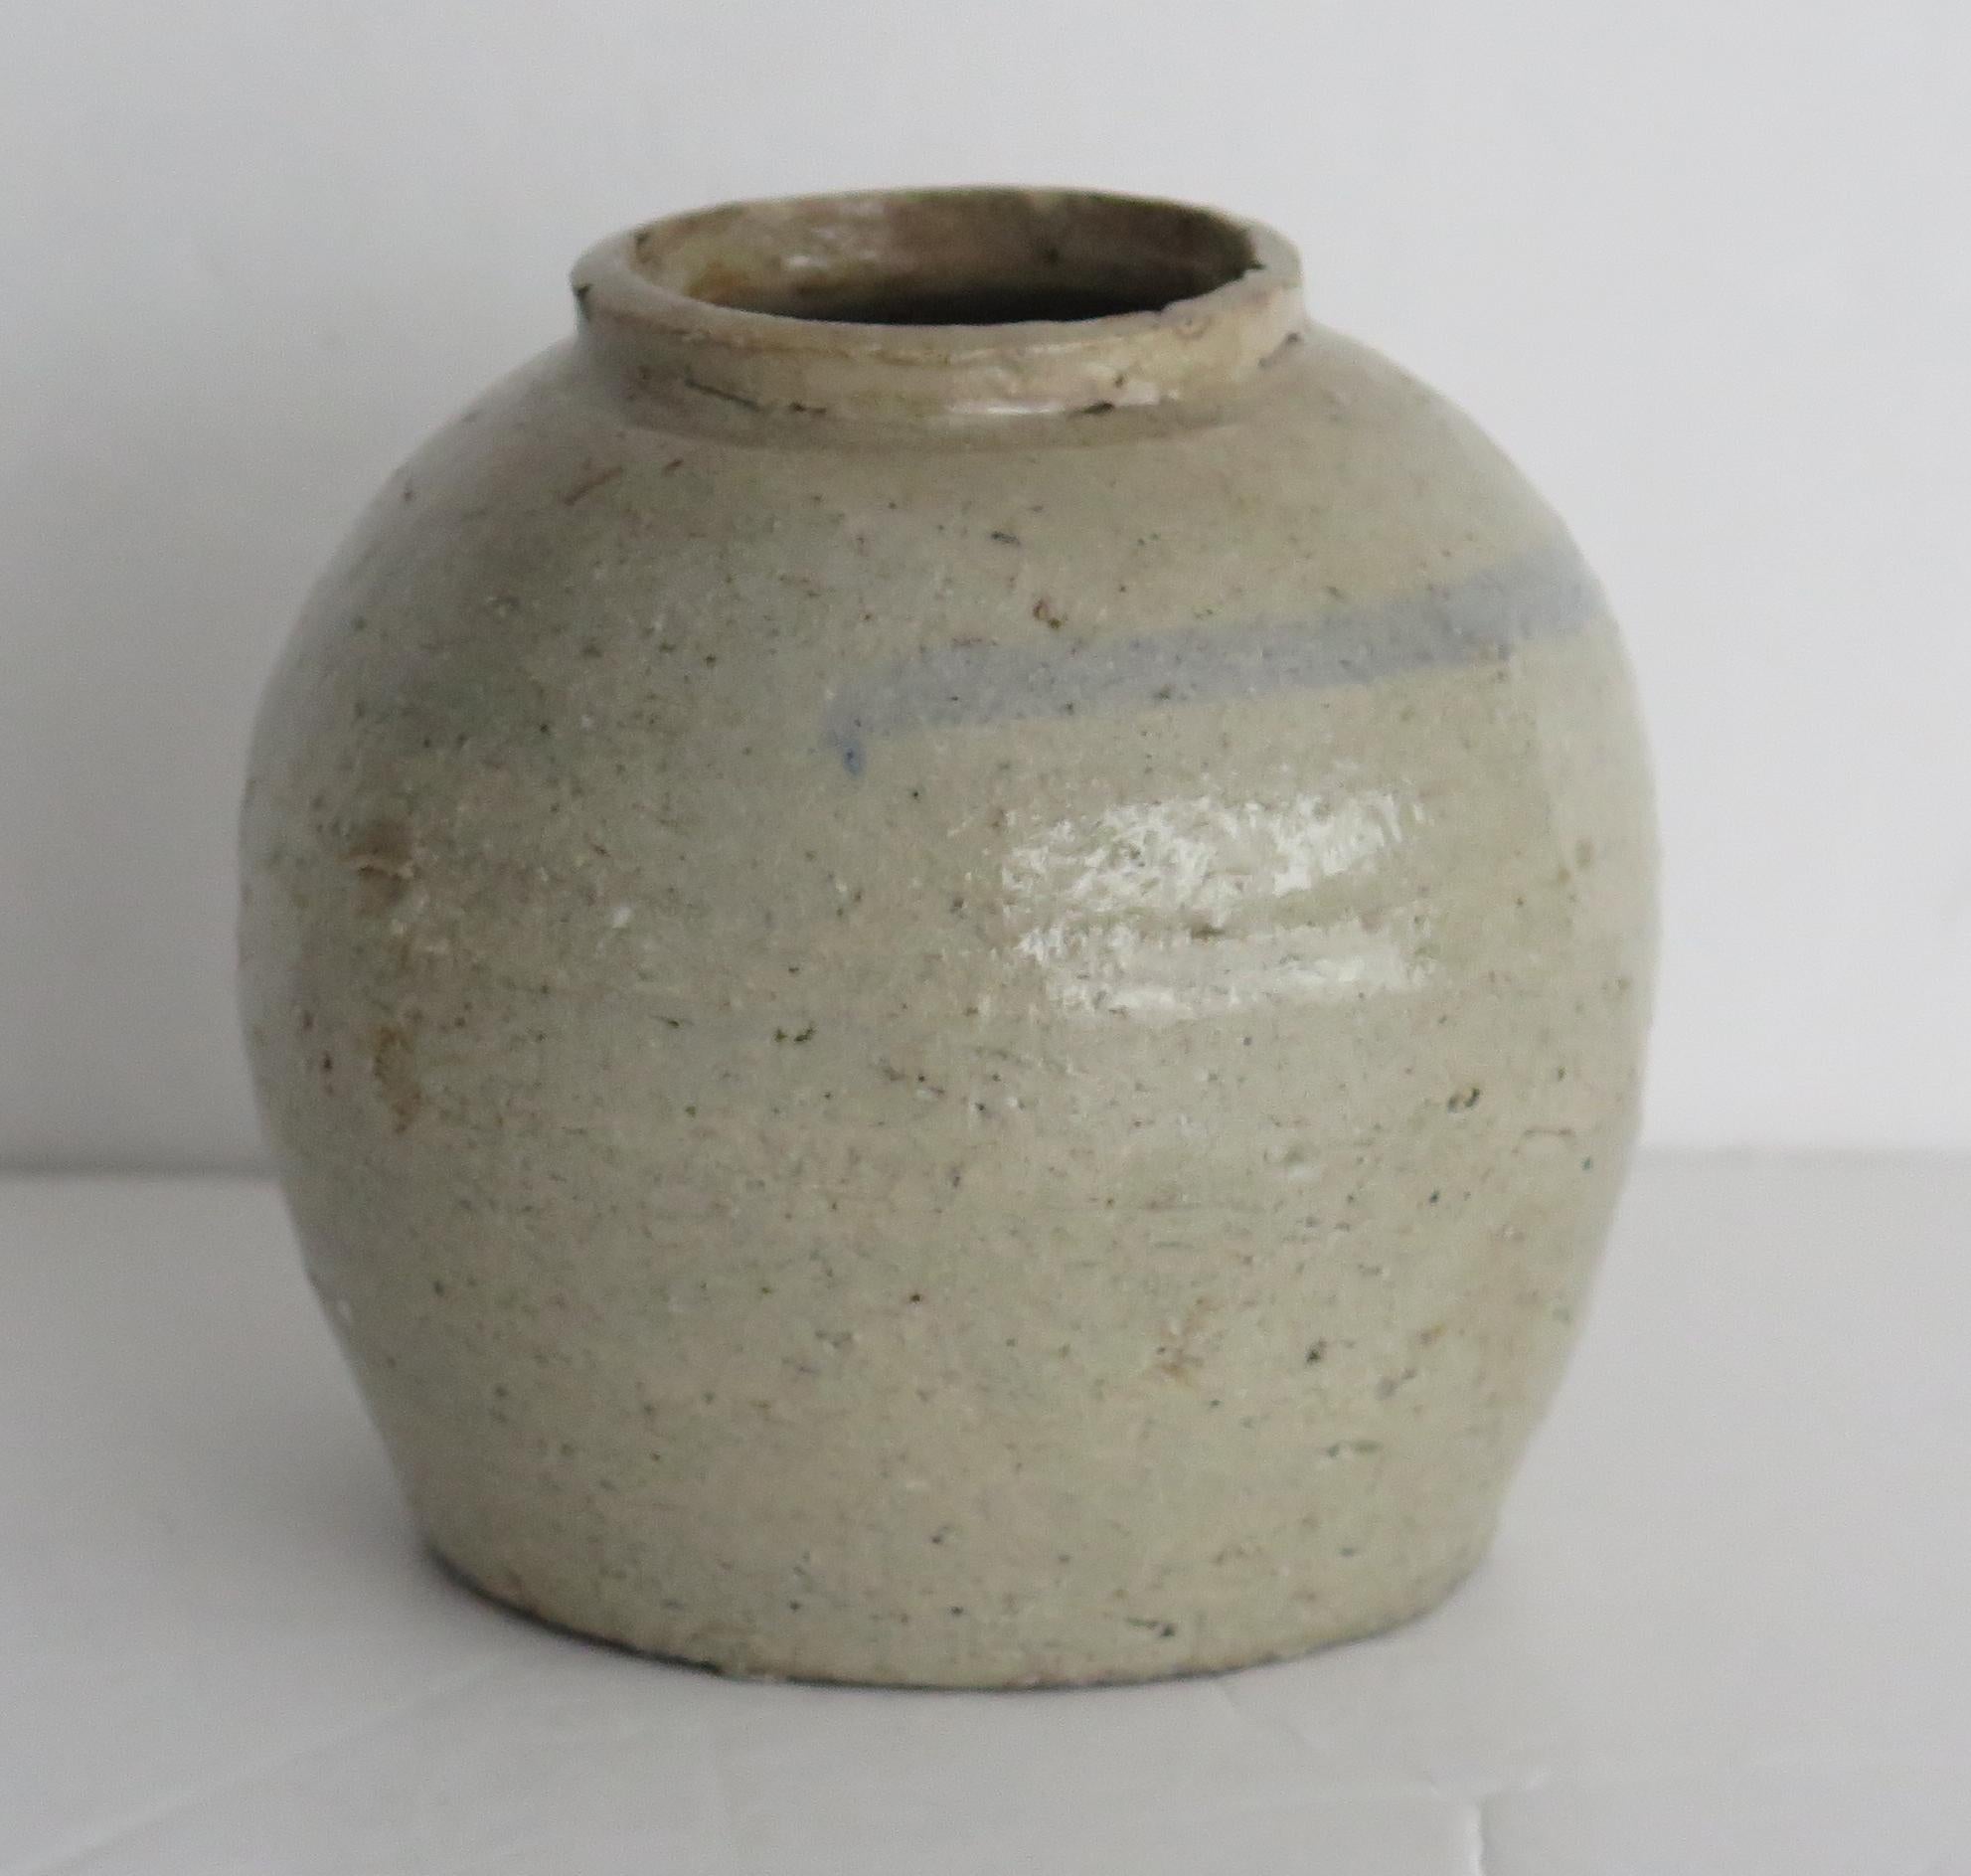 Dies ist ein chinesischer, handgedrehter Keramikkrug aus der Provinz mit einer hellen Seladonglasur, den wir auf die Ming-Zeit des frühen 17.

Das Gefäß ist von Hand getöpfert, hat einen kurzen Hals und ist einfach mit einem Ring verziert, der in